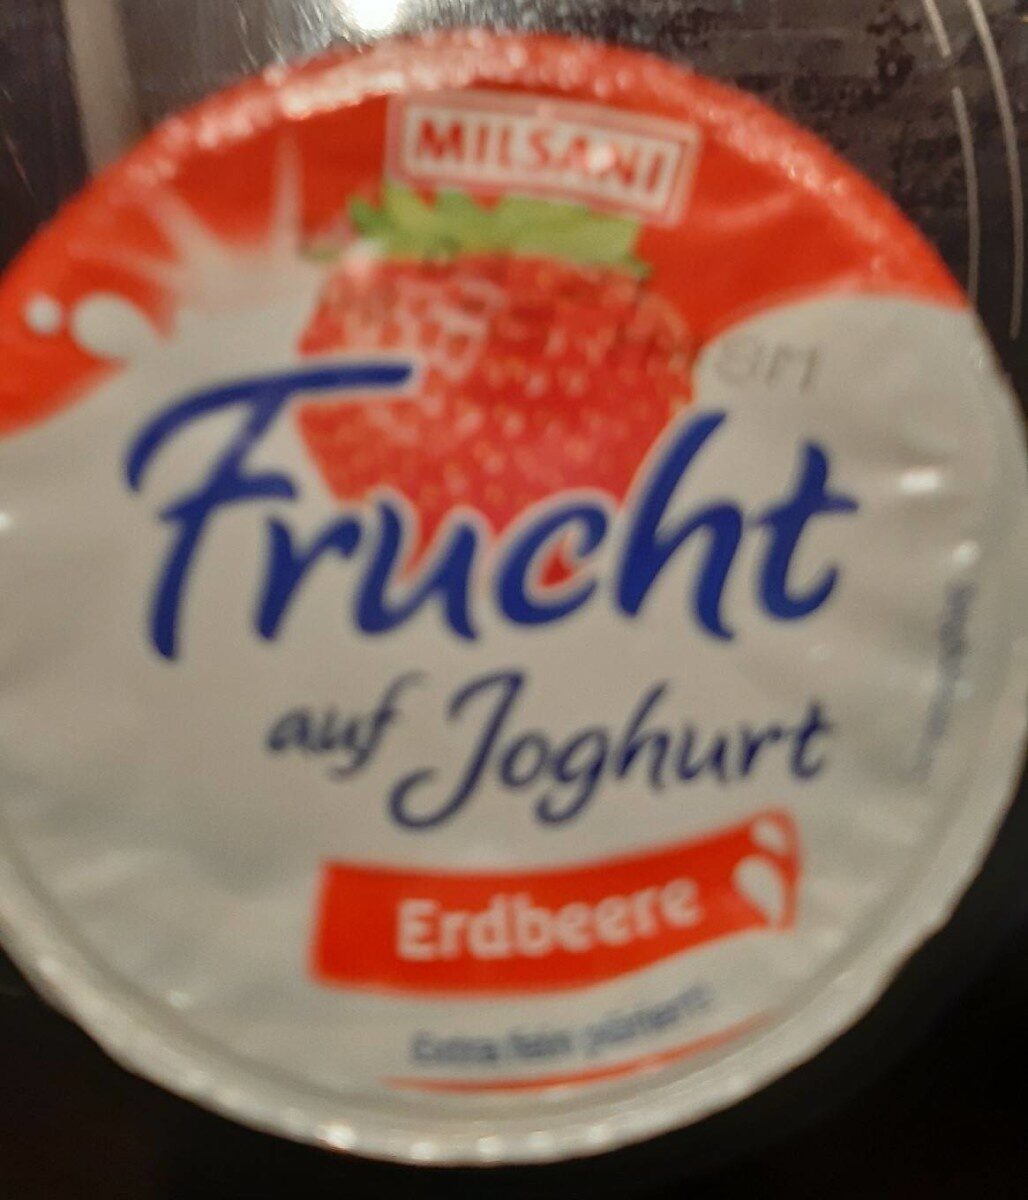 joghurt - Produkt - de